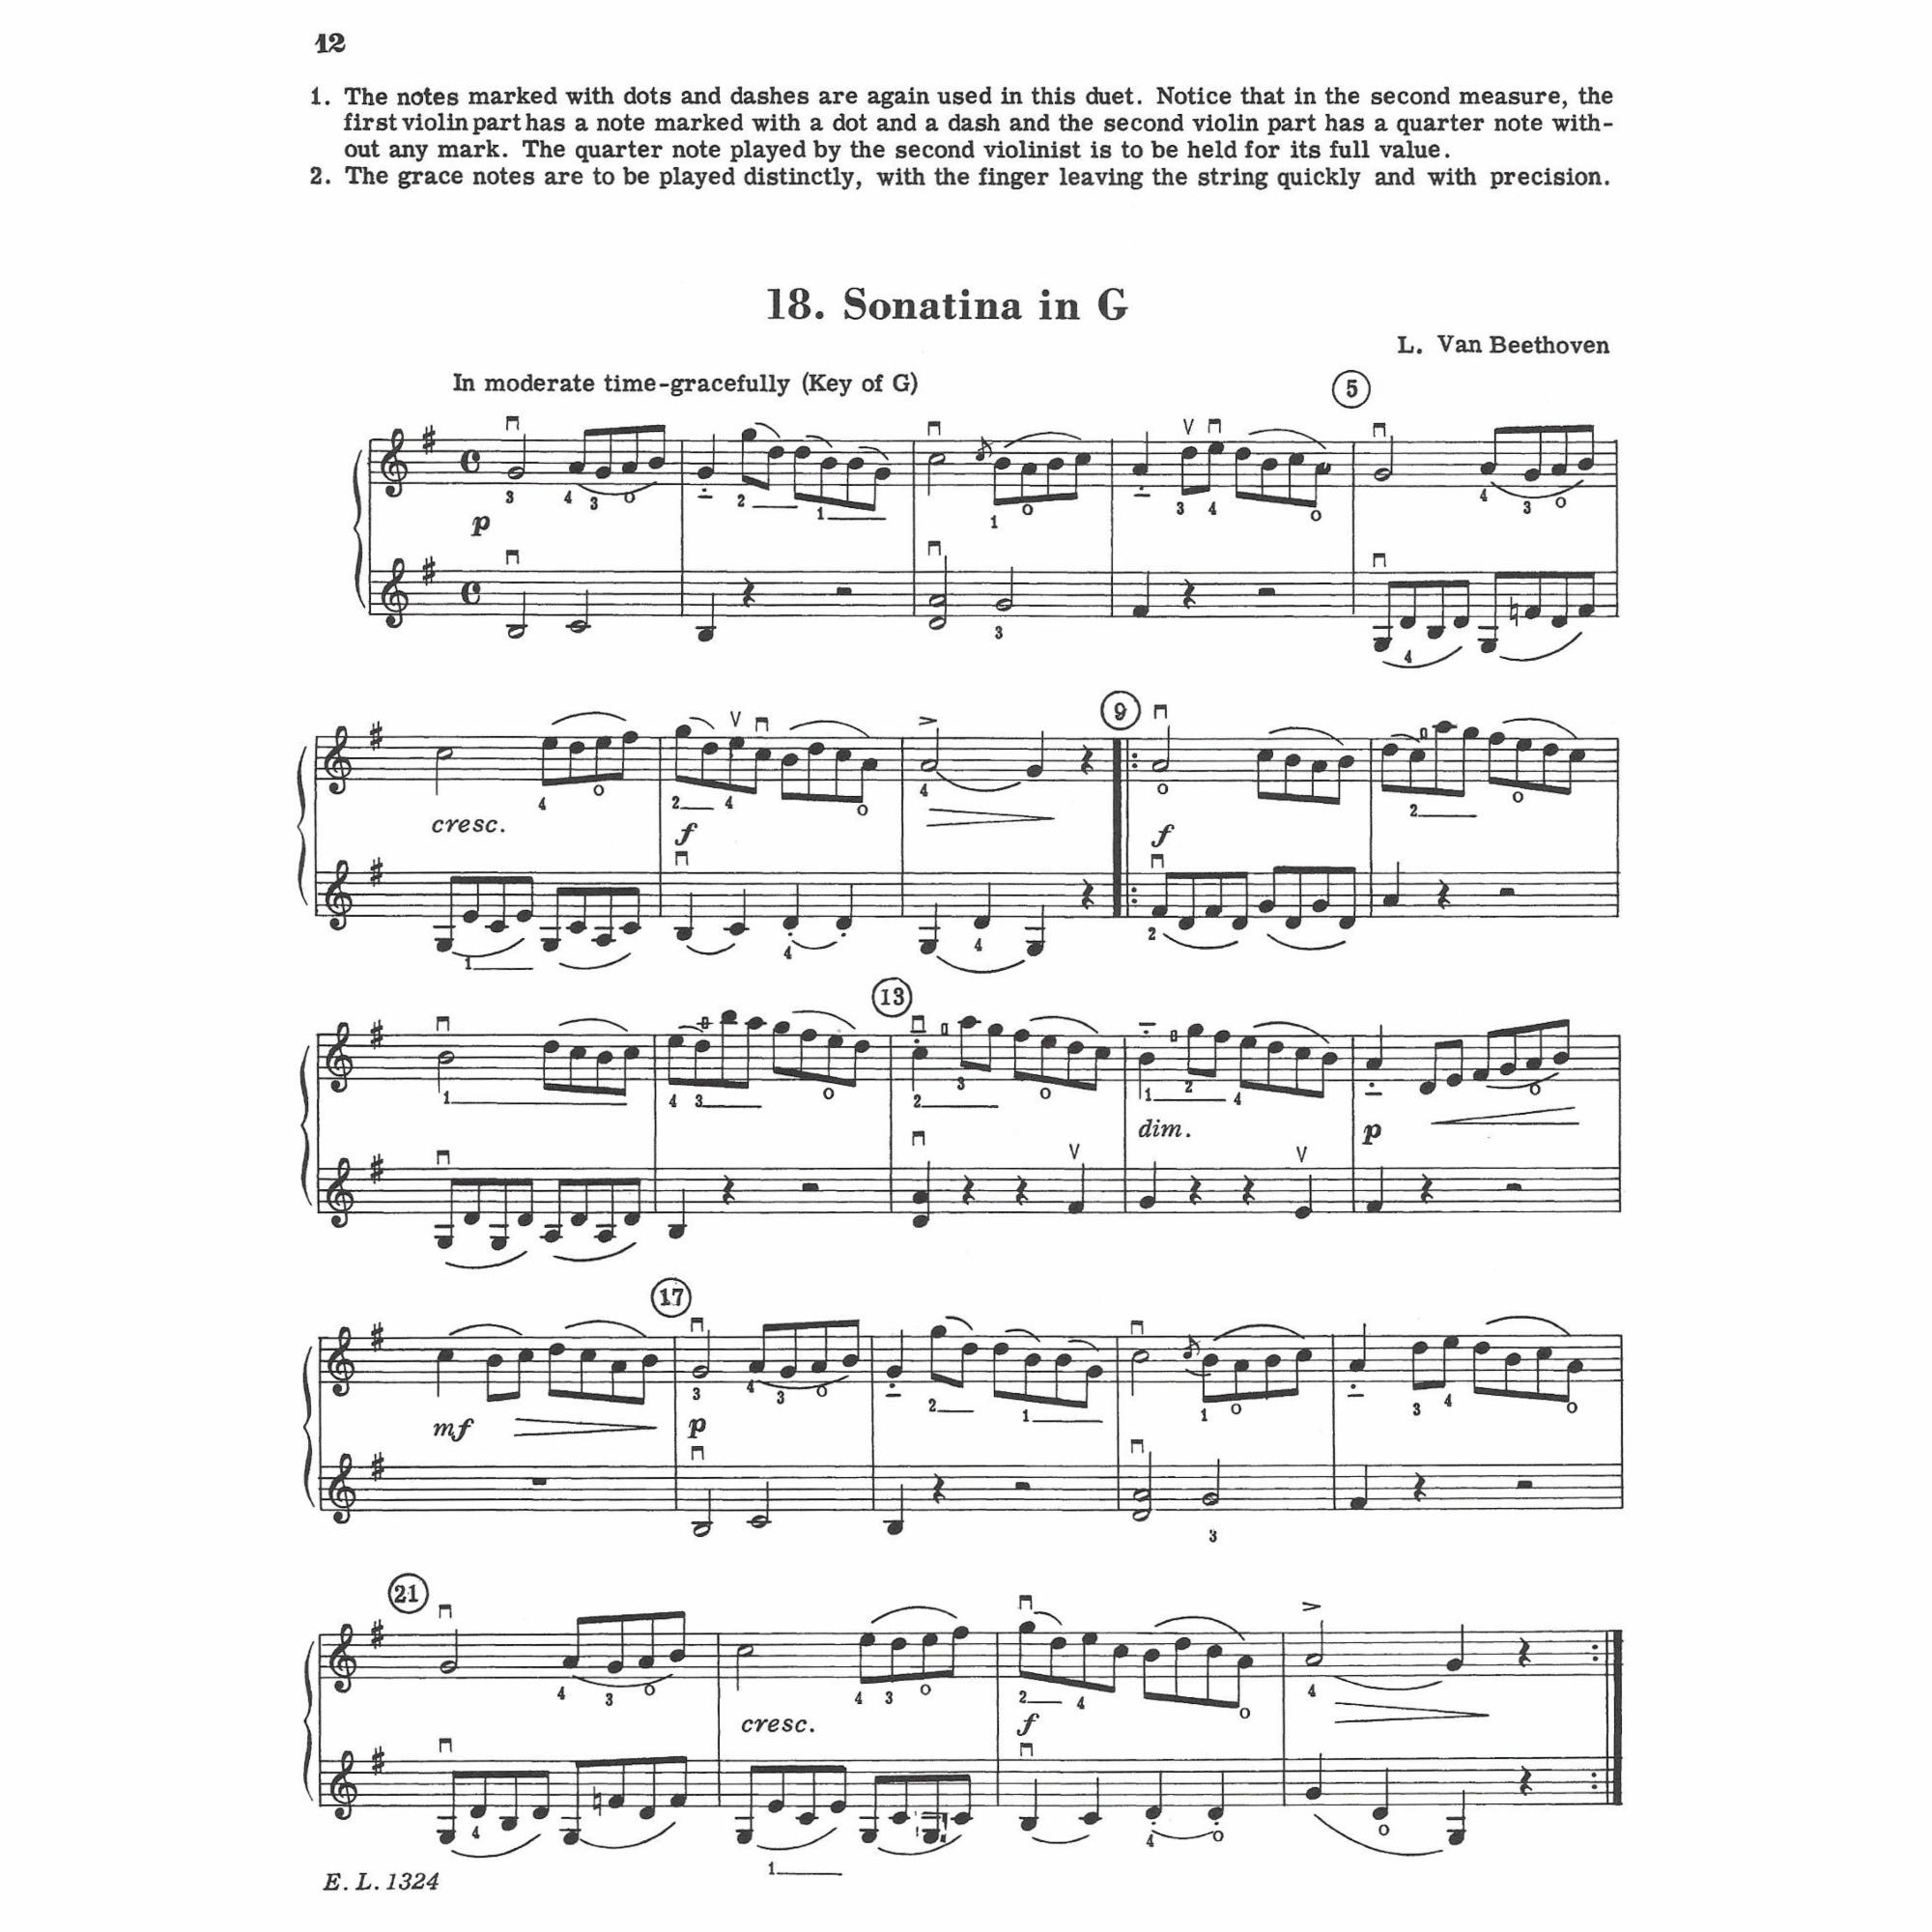 Sample: Violin (Pg. 12)